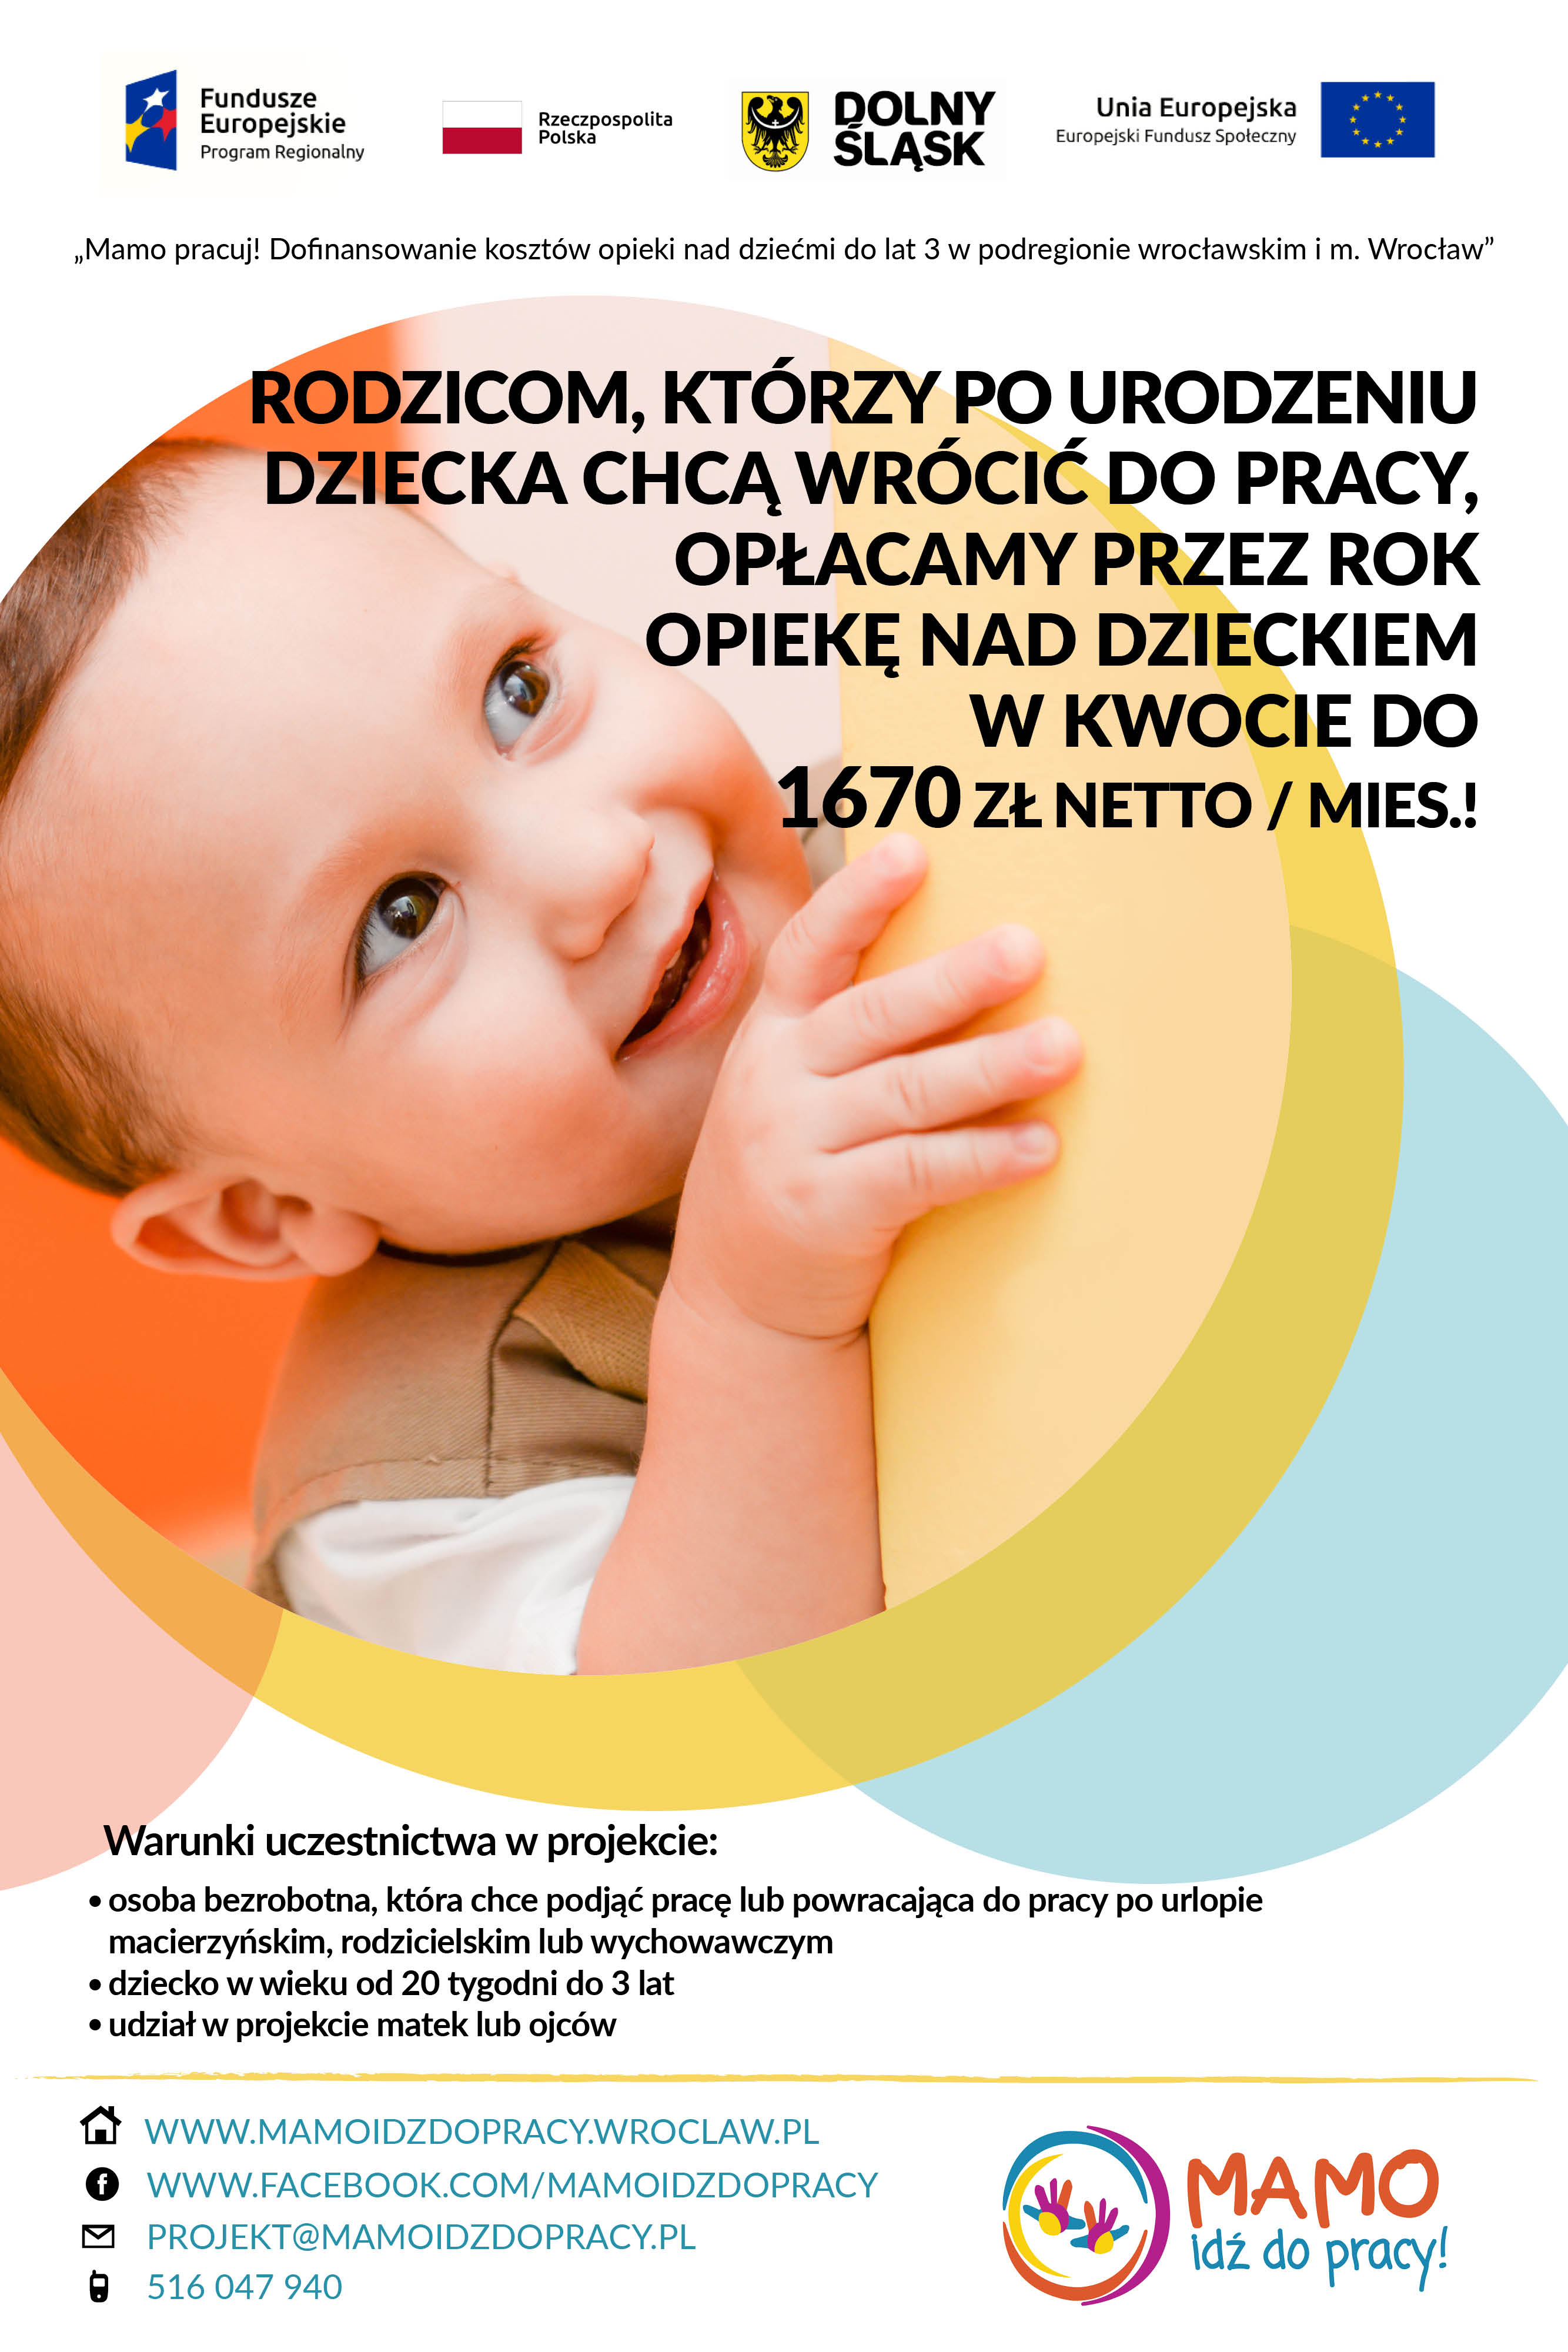 plakat przedstawia dane kontaktowe i informacje na temat projektu "Mamo pracuj"